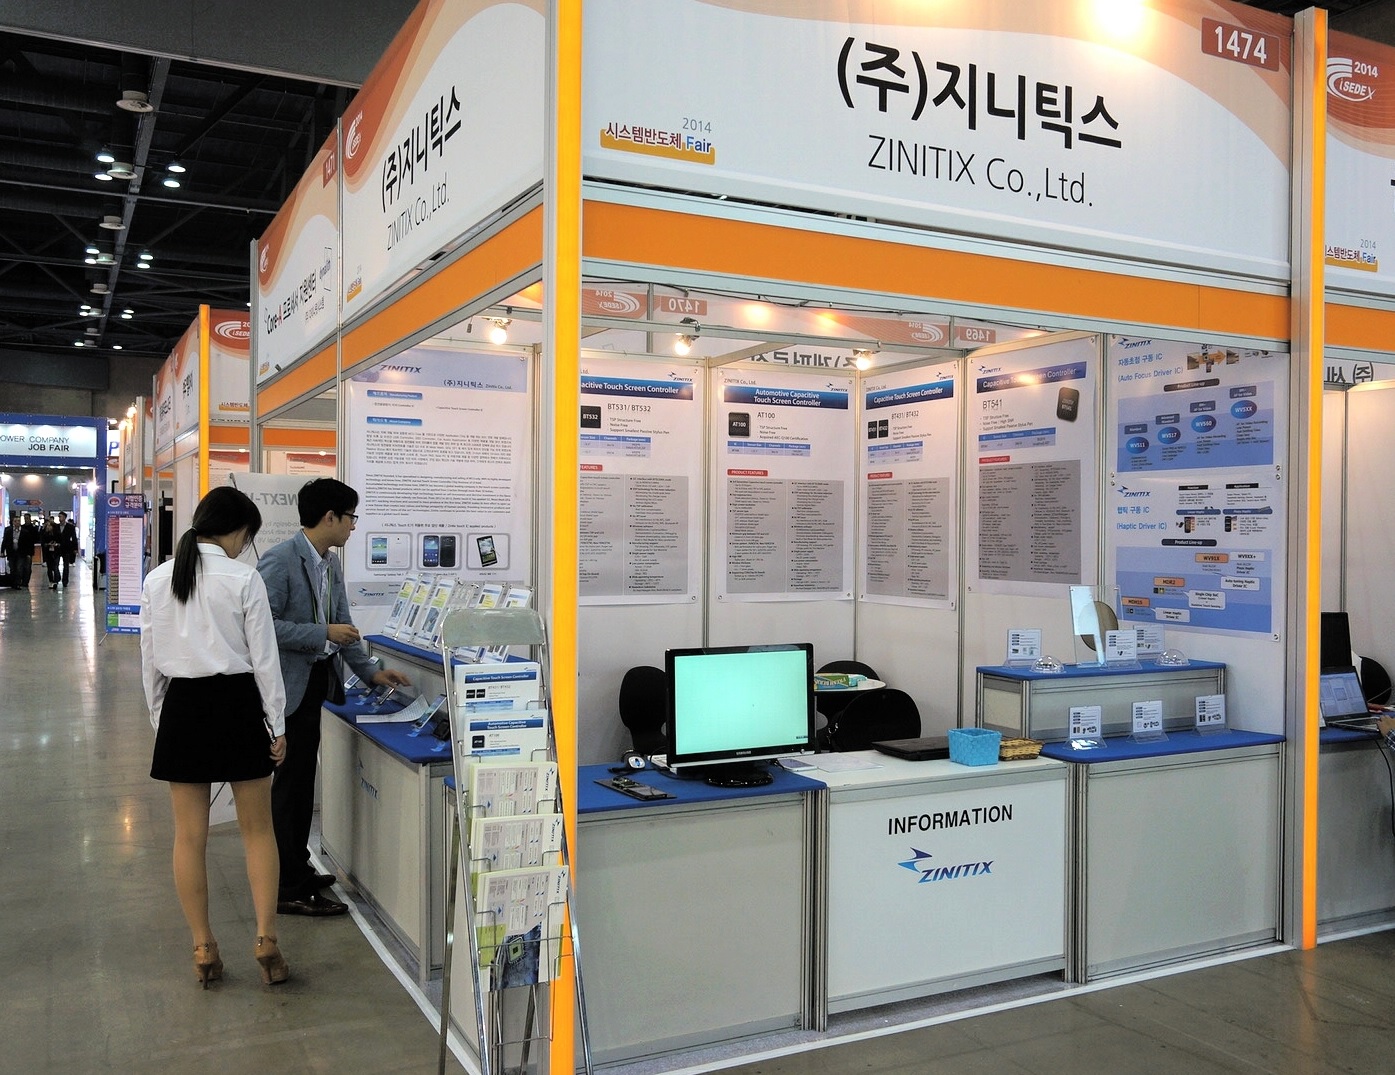 2014년 한국 전자전시회 참가